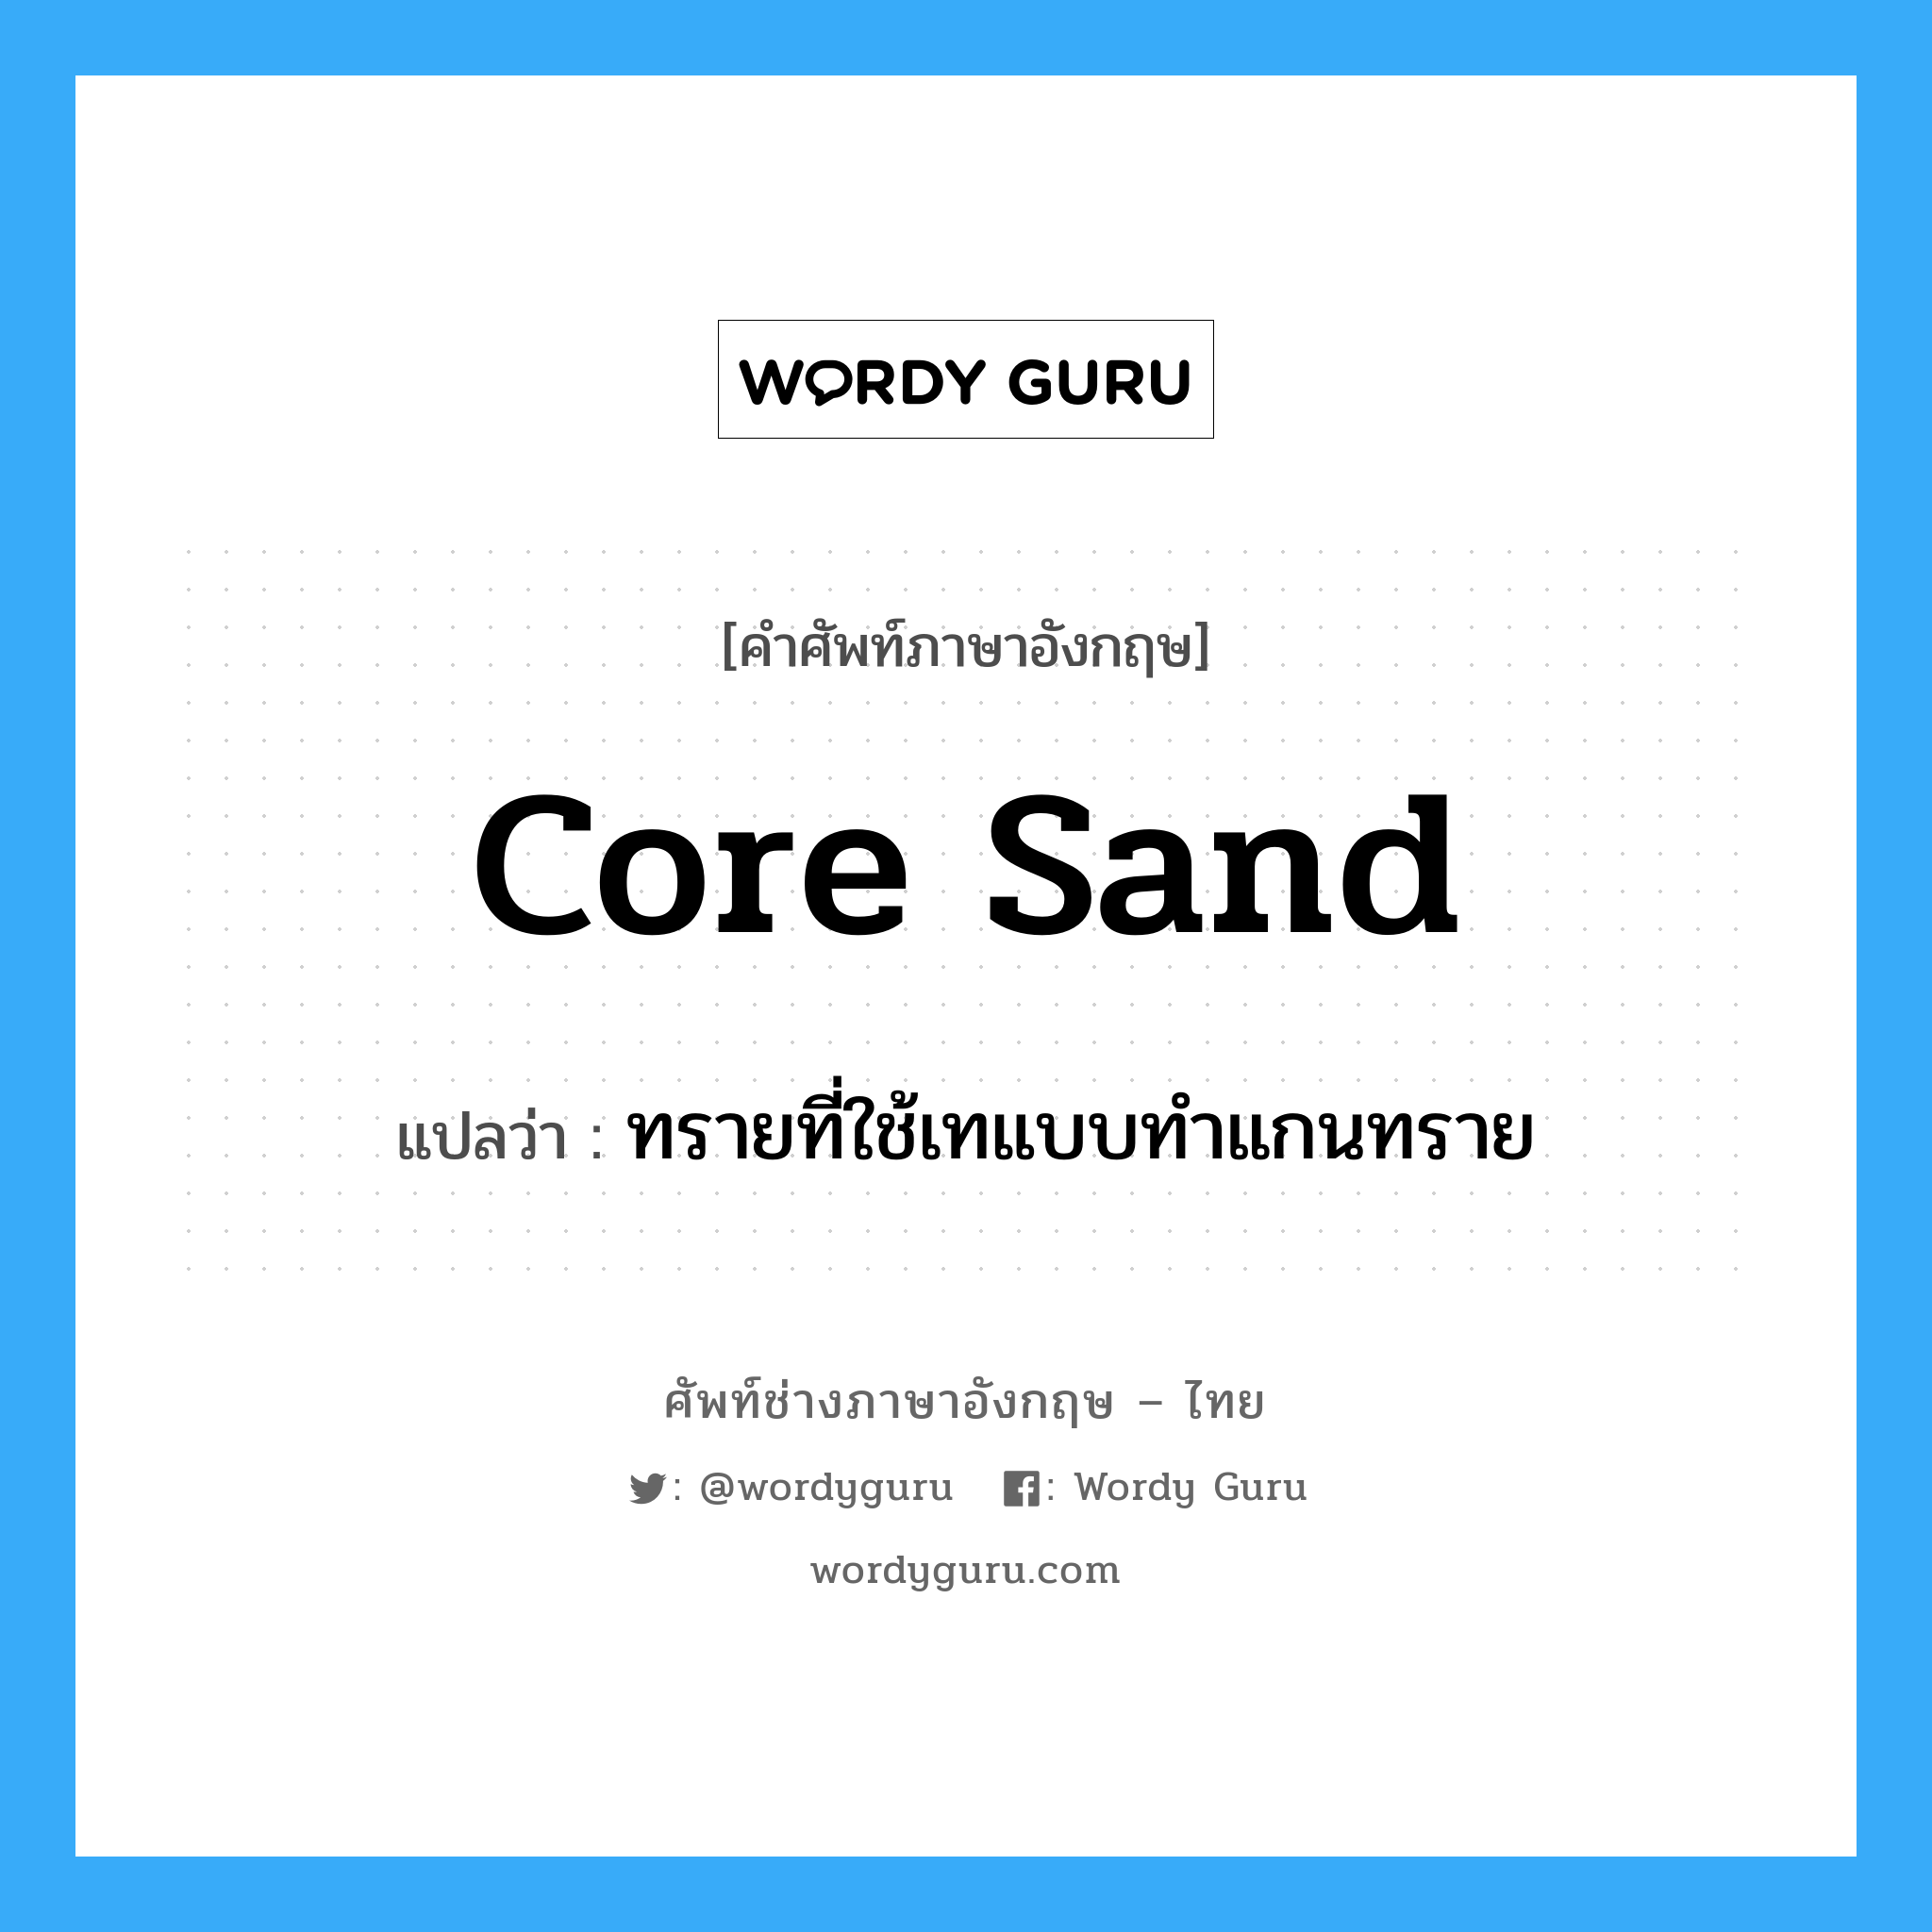 ทรายที่ใช้เทแบบทำแกนทราย ภาษาอังกฤษ?, คำศัพท์ช่างภาษาอังกฤษ - ไทย ทรายที่ใช้เทแบบทำแกนทราย คำศัพท์ภาษาอังกฤษ ทรายที่ใช้เทแบบทำแกนทราย แปลว่า core sand